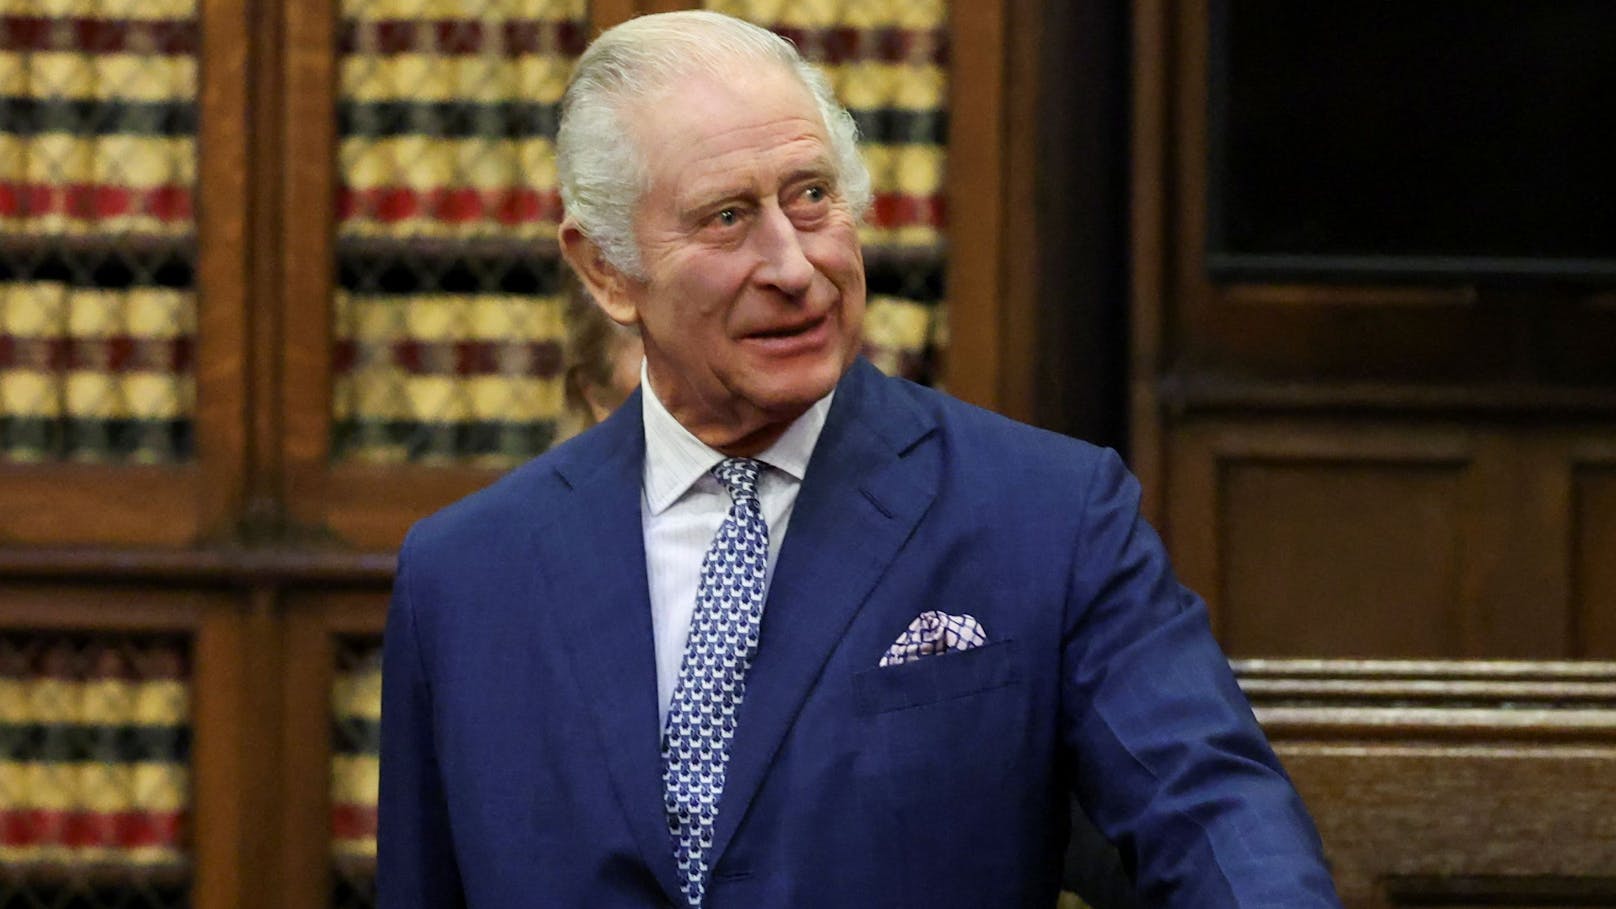 Mehr Prostata-Untersuchungen wegen König Charles?